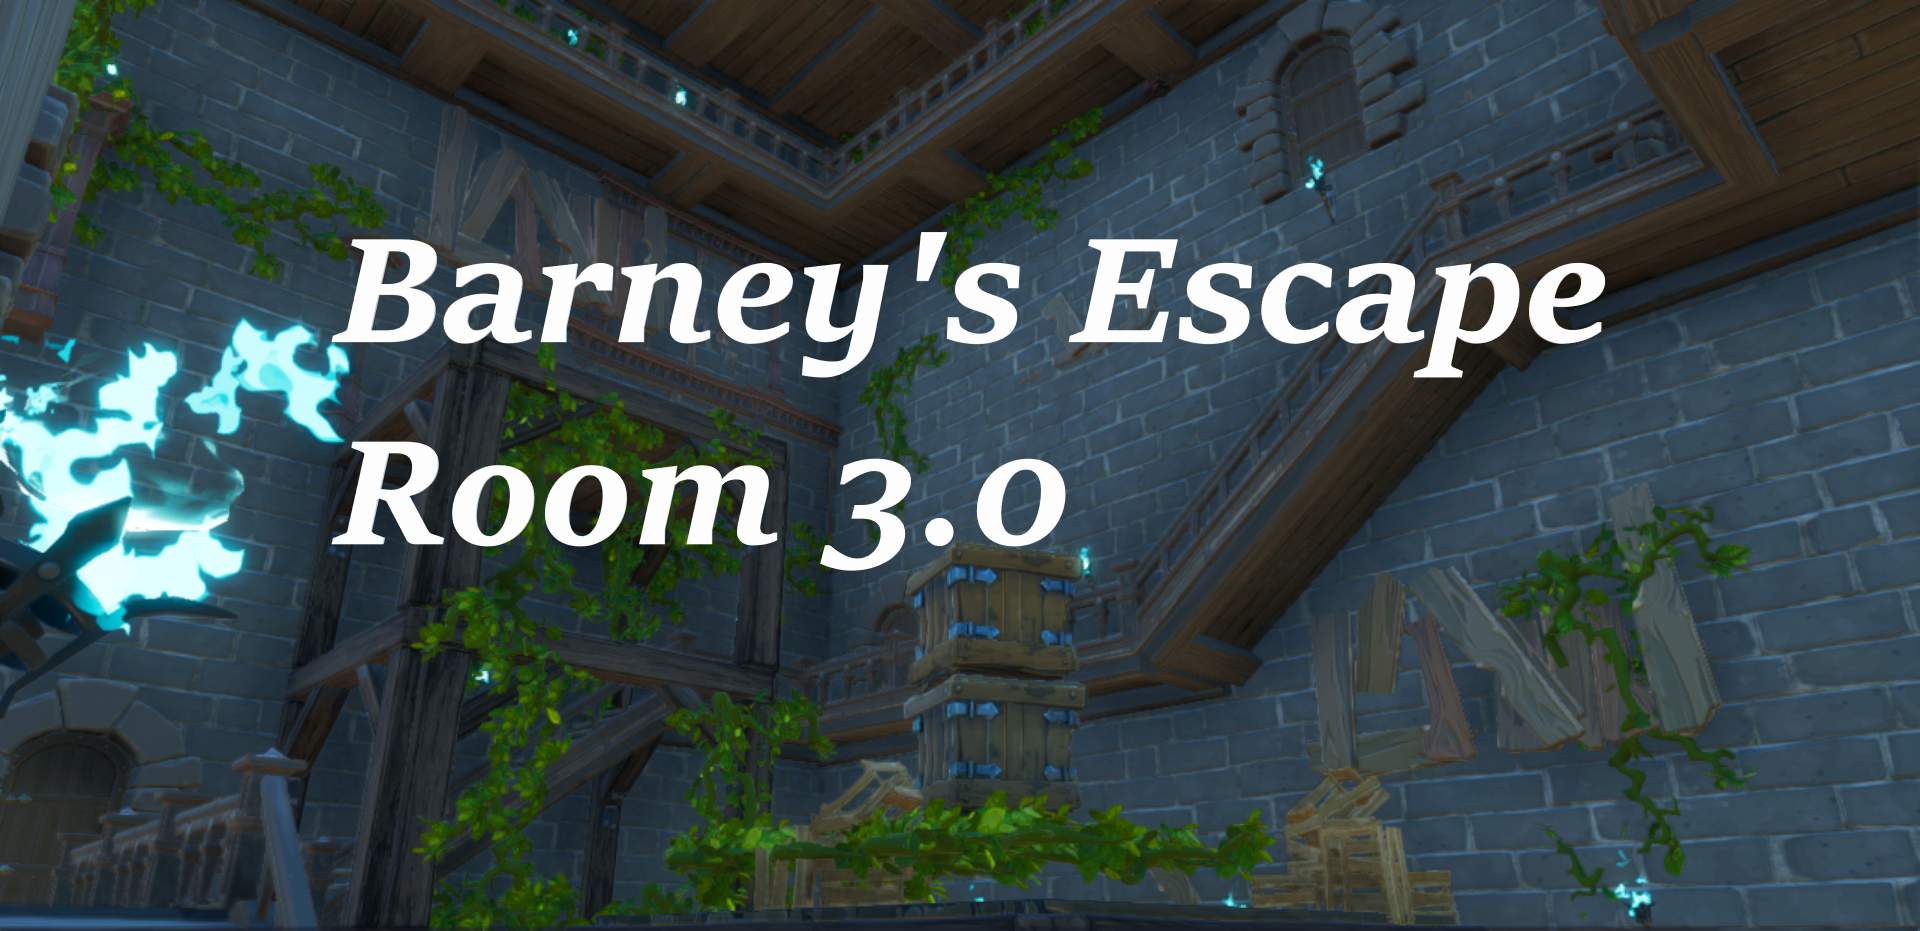 BARNEY'S ESCAPE ROOM 3.0